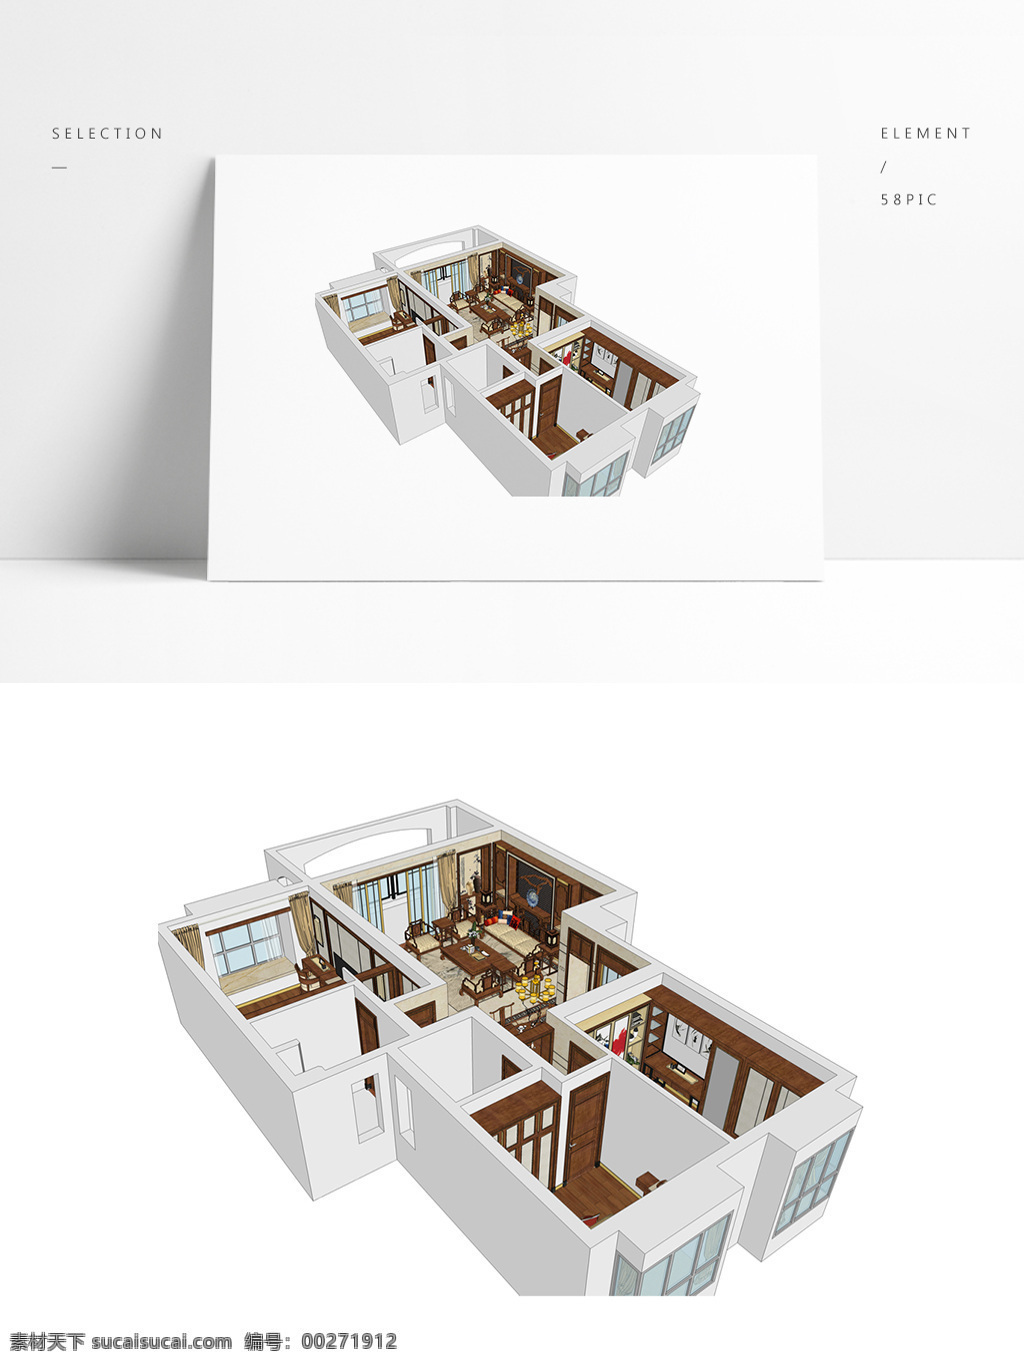 中式 风格 住宅 su 模型 室内空间设计 住宅室内设计 样板房 透视 3d模型 su模型 草图大师模型 家具模型